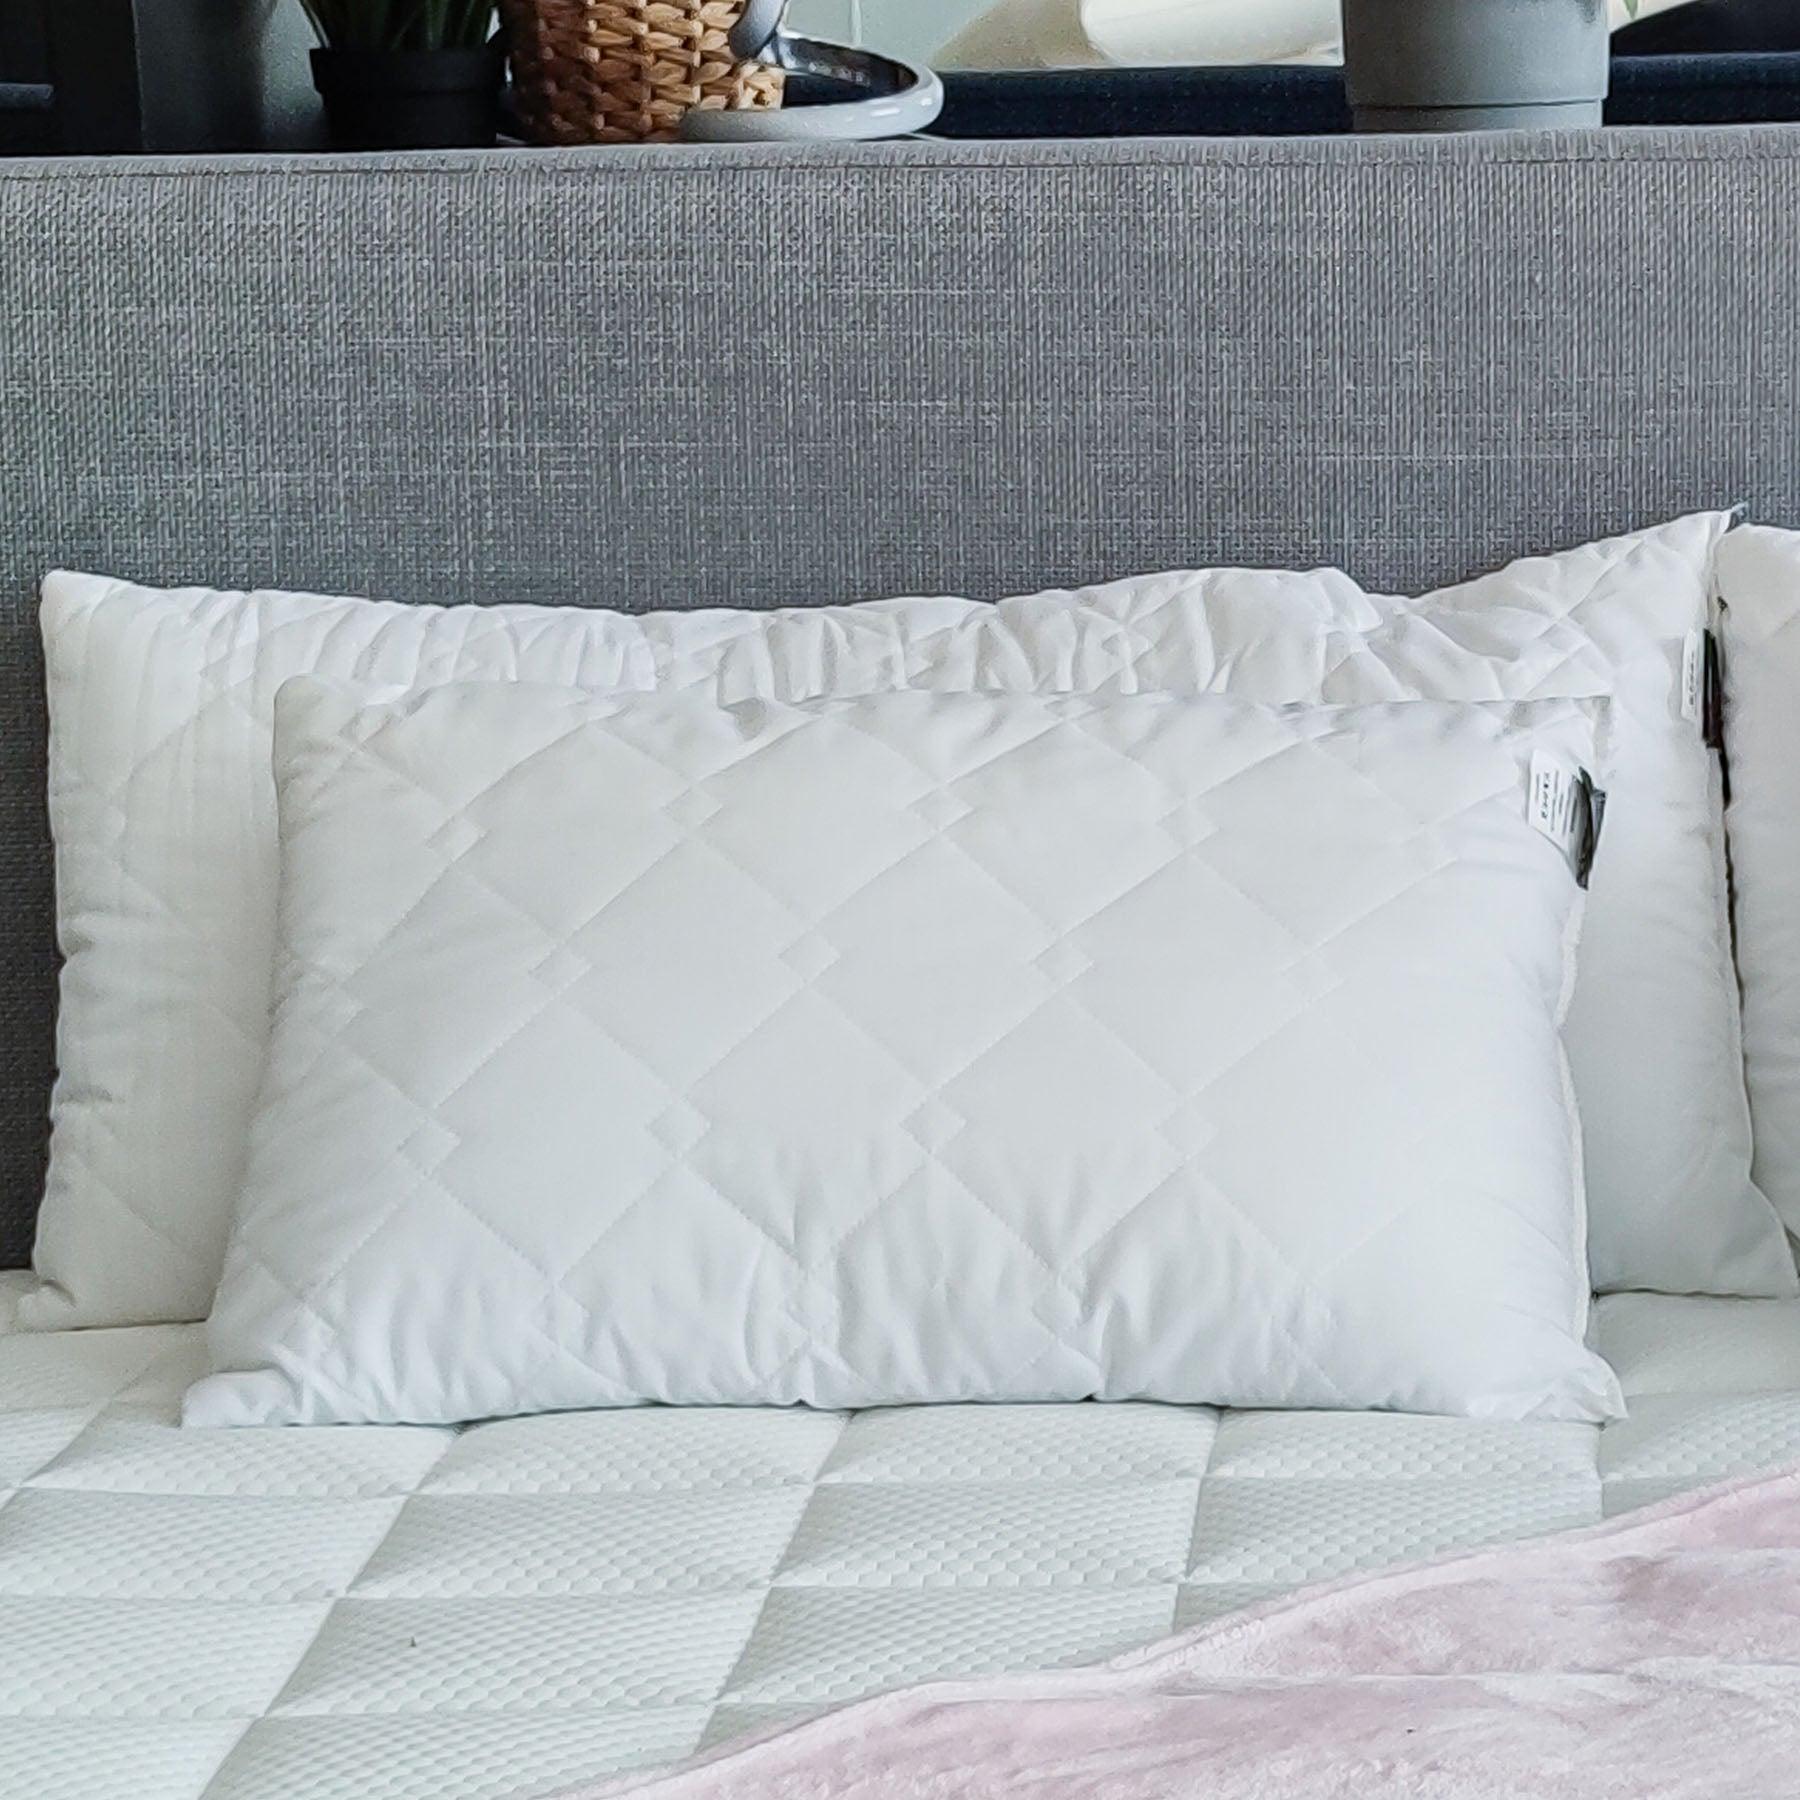 Set di cuscini decorativi BRUNELLESCHI in microfibra, misura 40x60 - Stile e comfort per il tuo arredamento su Beliamo.com #misura_40x60 X4